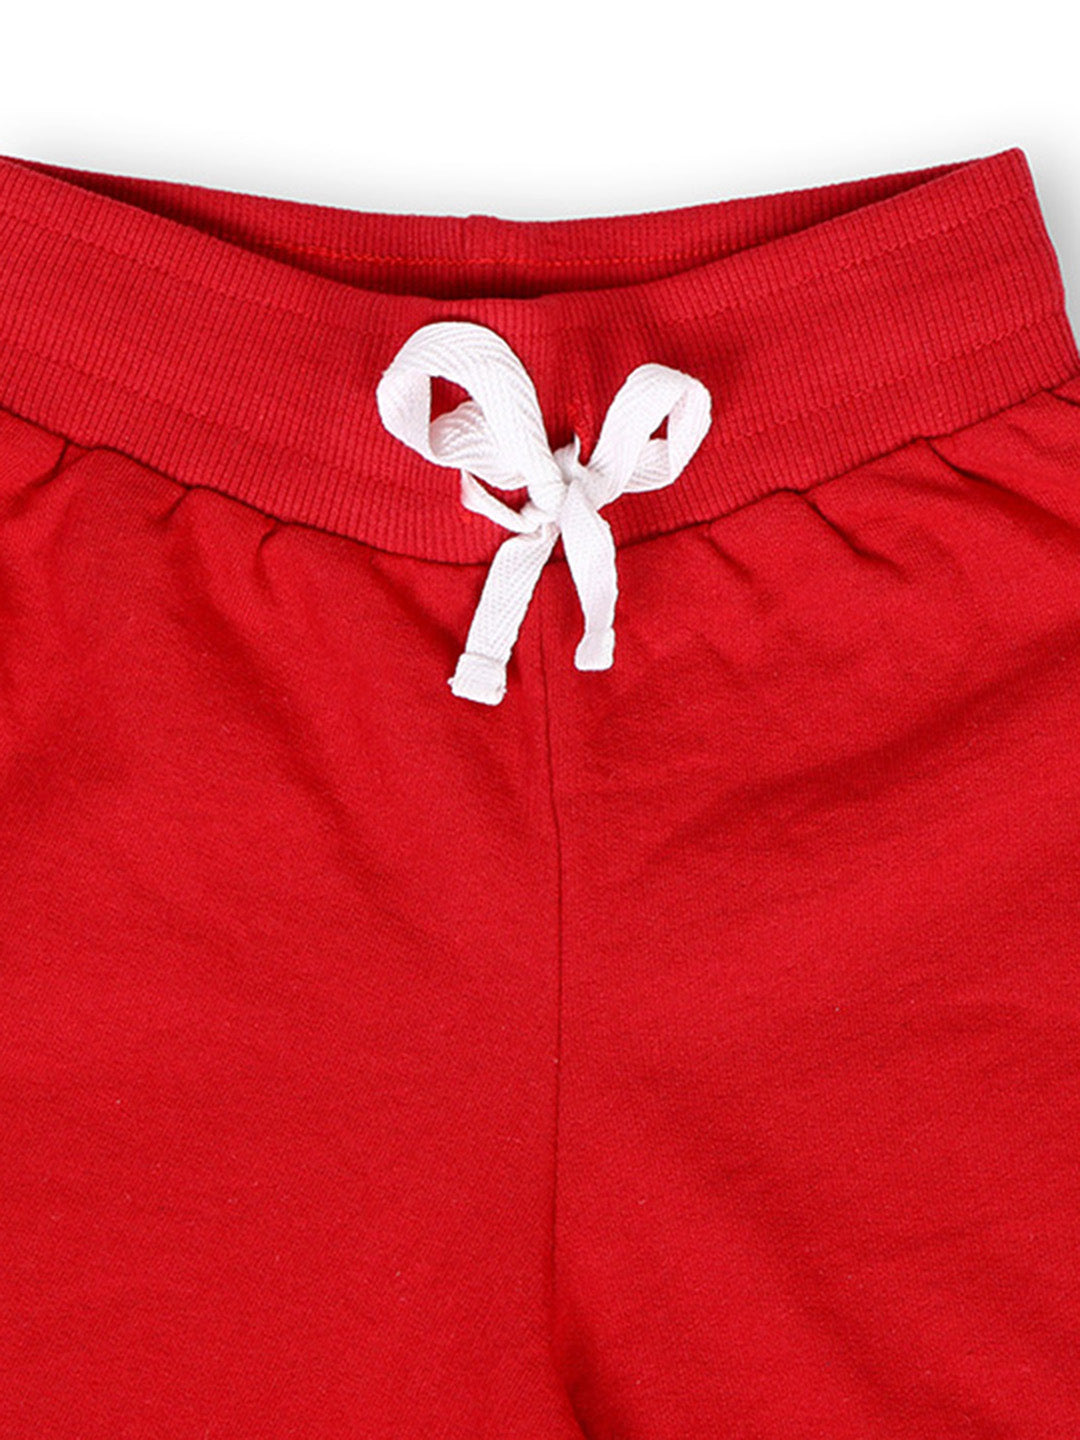 TWGE - Kids Shorts for Girls - Short Pants - Printed Regular Fit Half Pants - Color Red